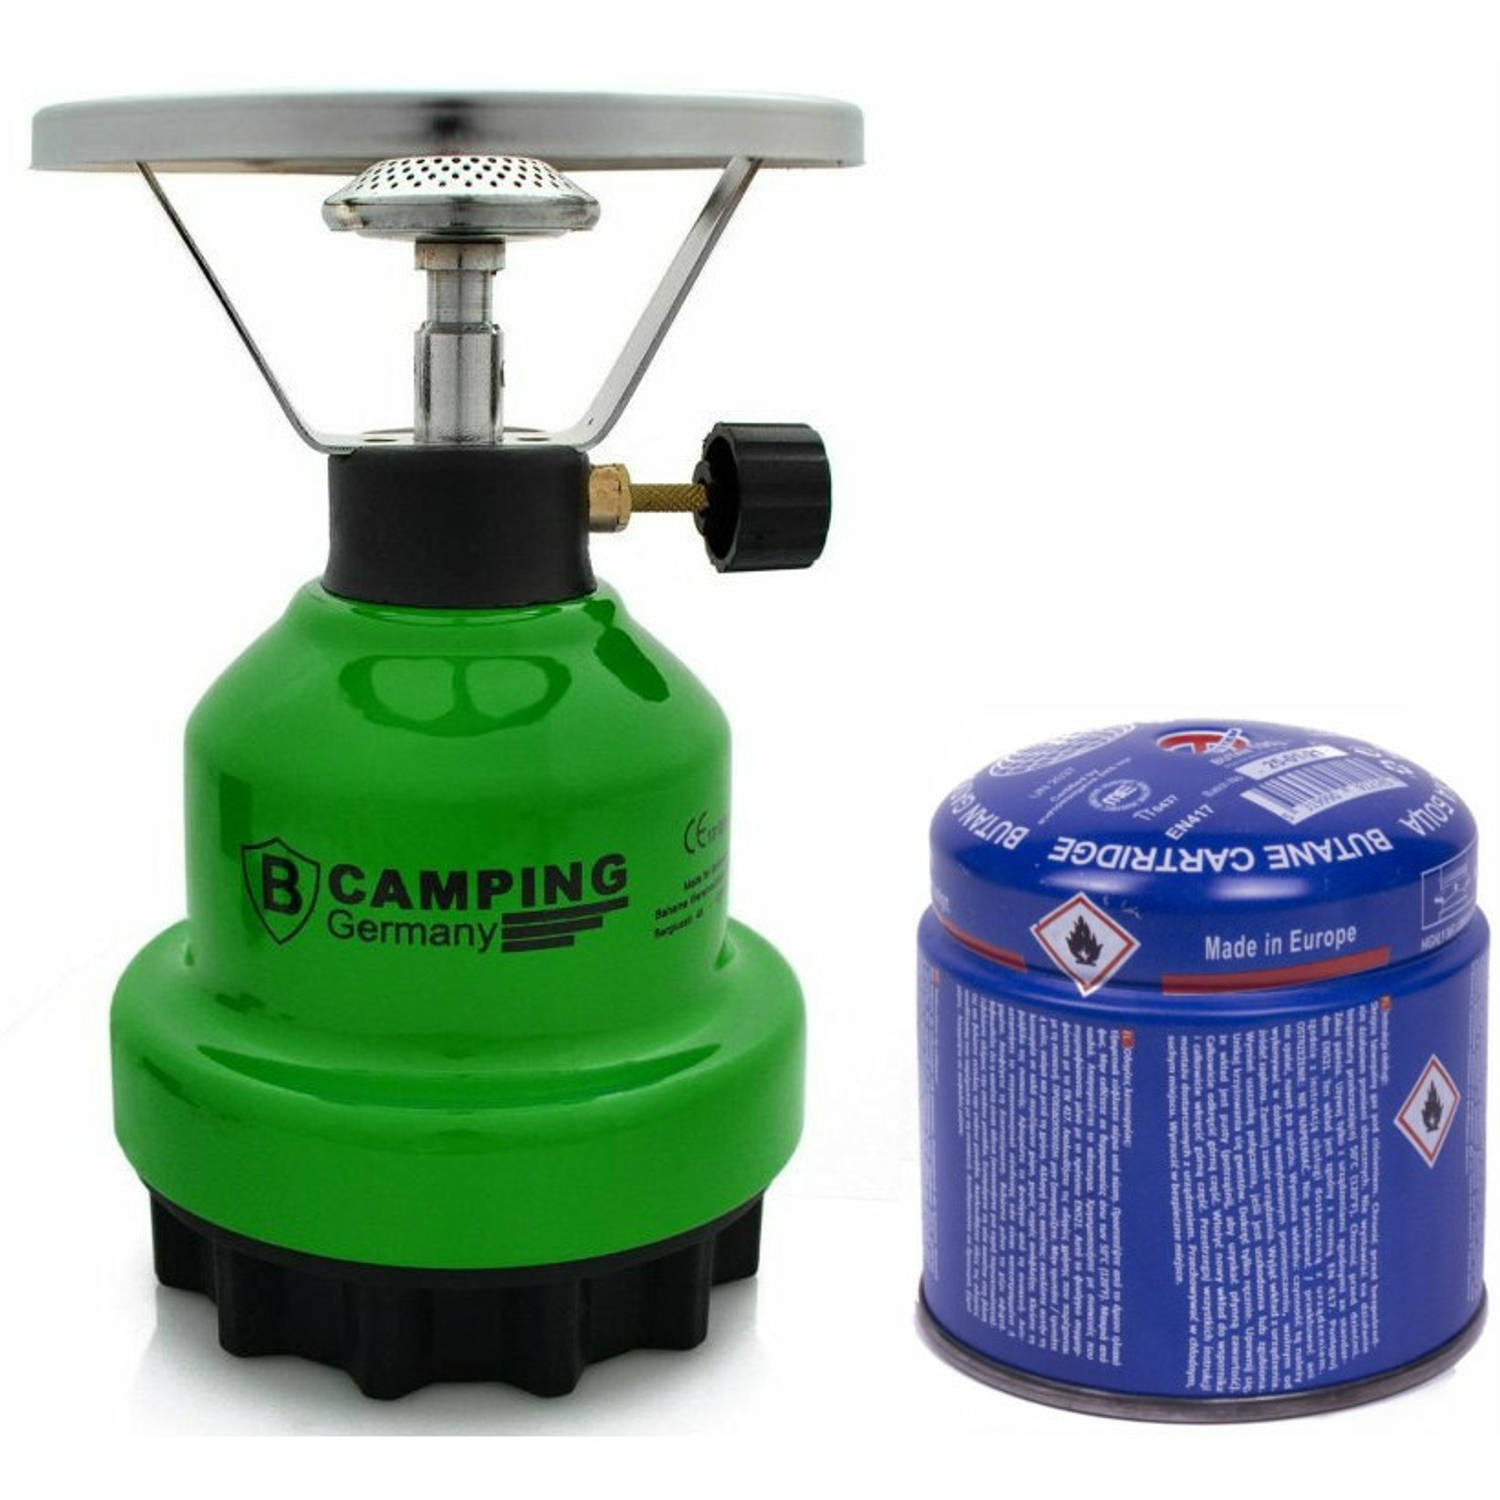 Camping kookstel metaal groen incl. gas navulling priktank 190 gram Kookbranders